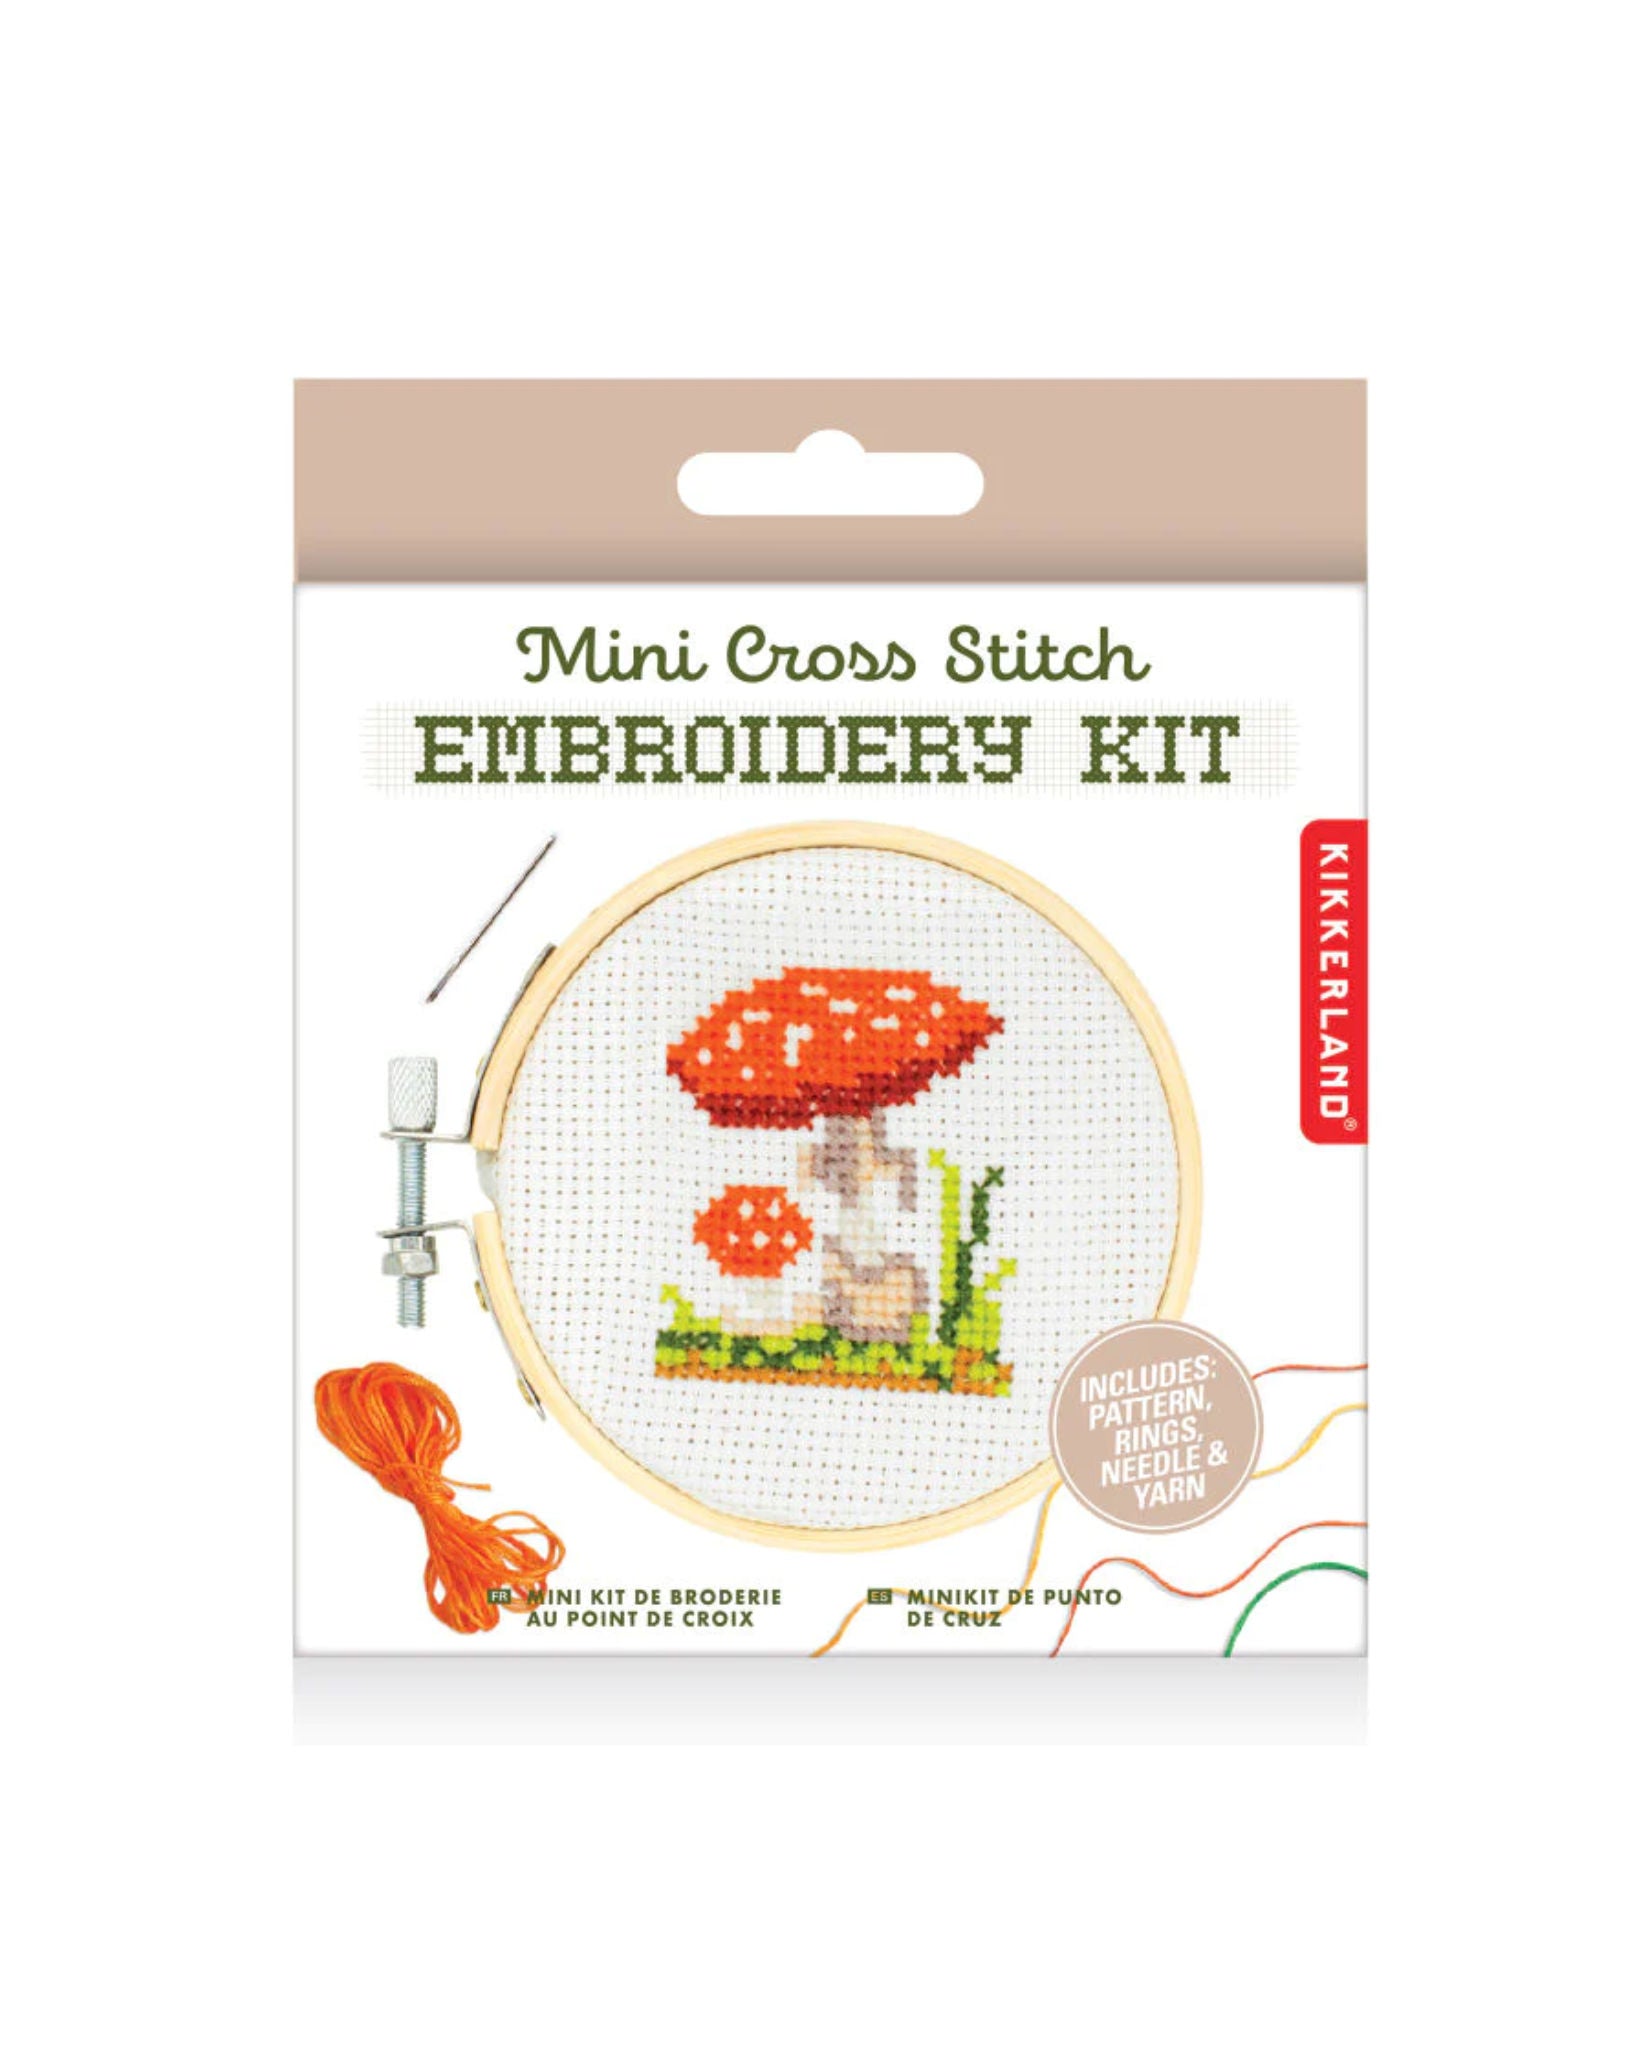 Mini Cross Stitch Embroidery Kit - Mushroom